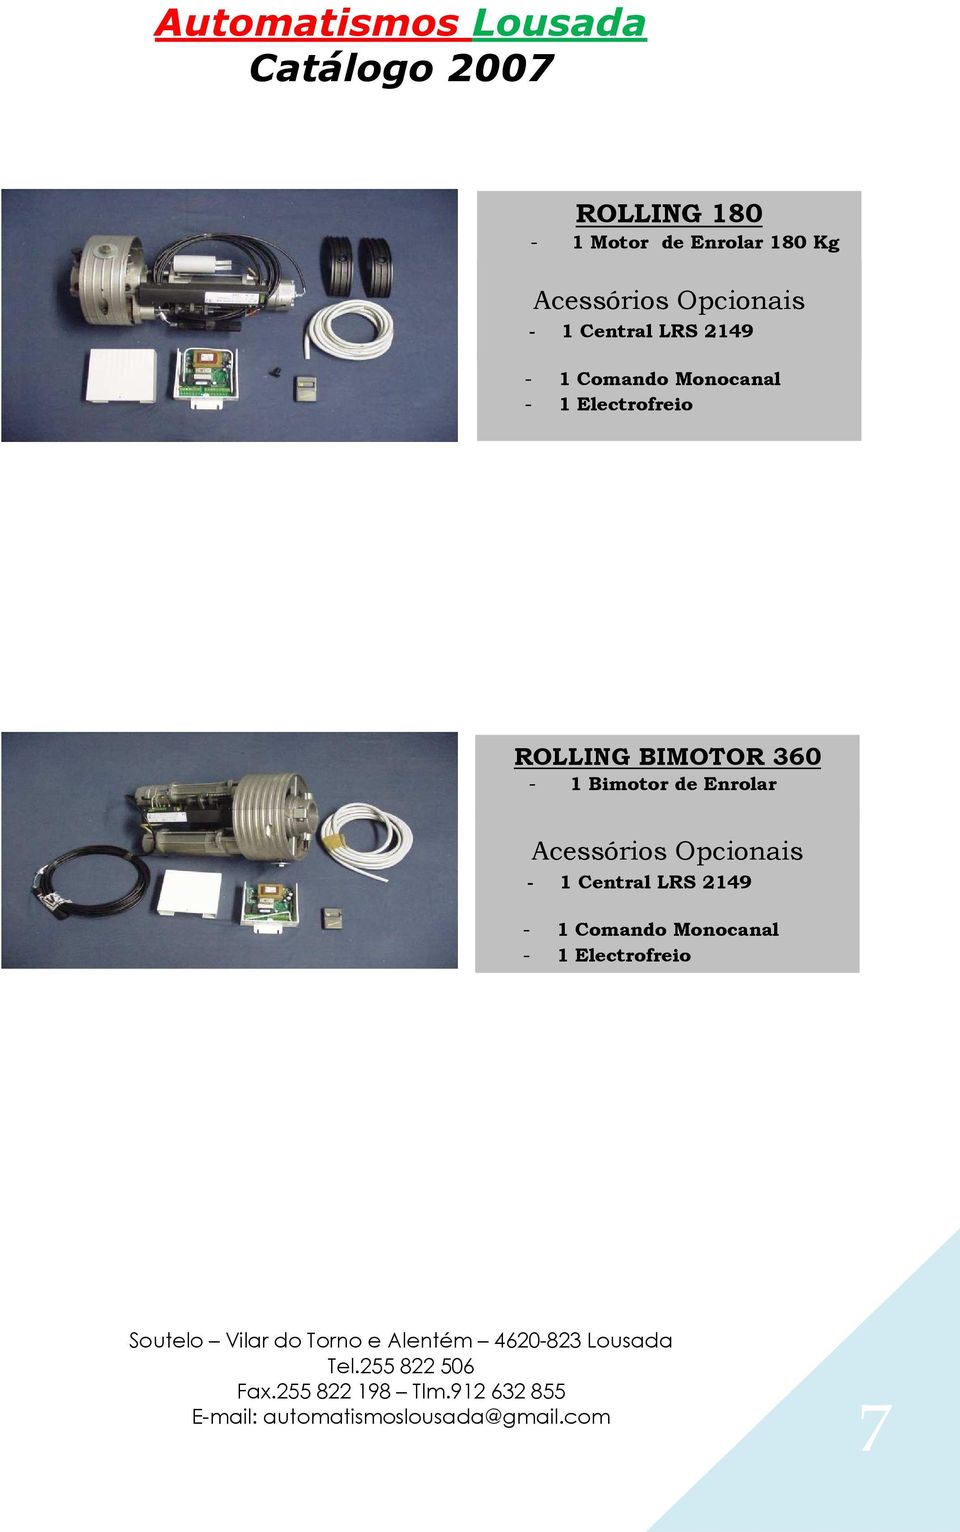 Electrofreio ROLLING BIMOTOR 360-1 Bimotor de Enrolar